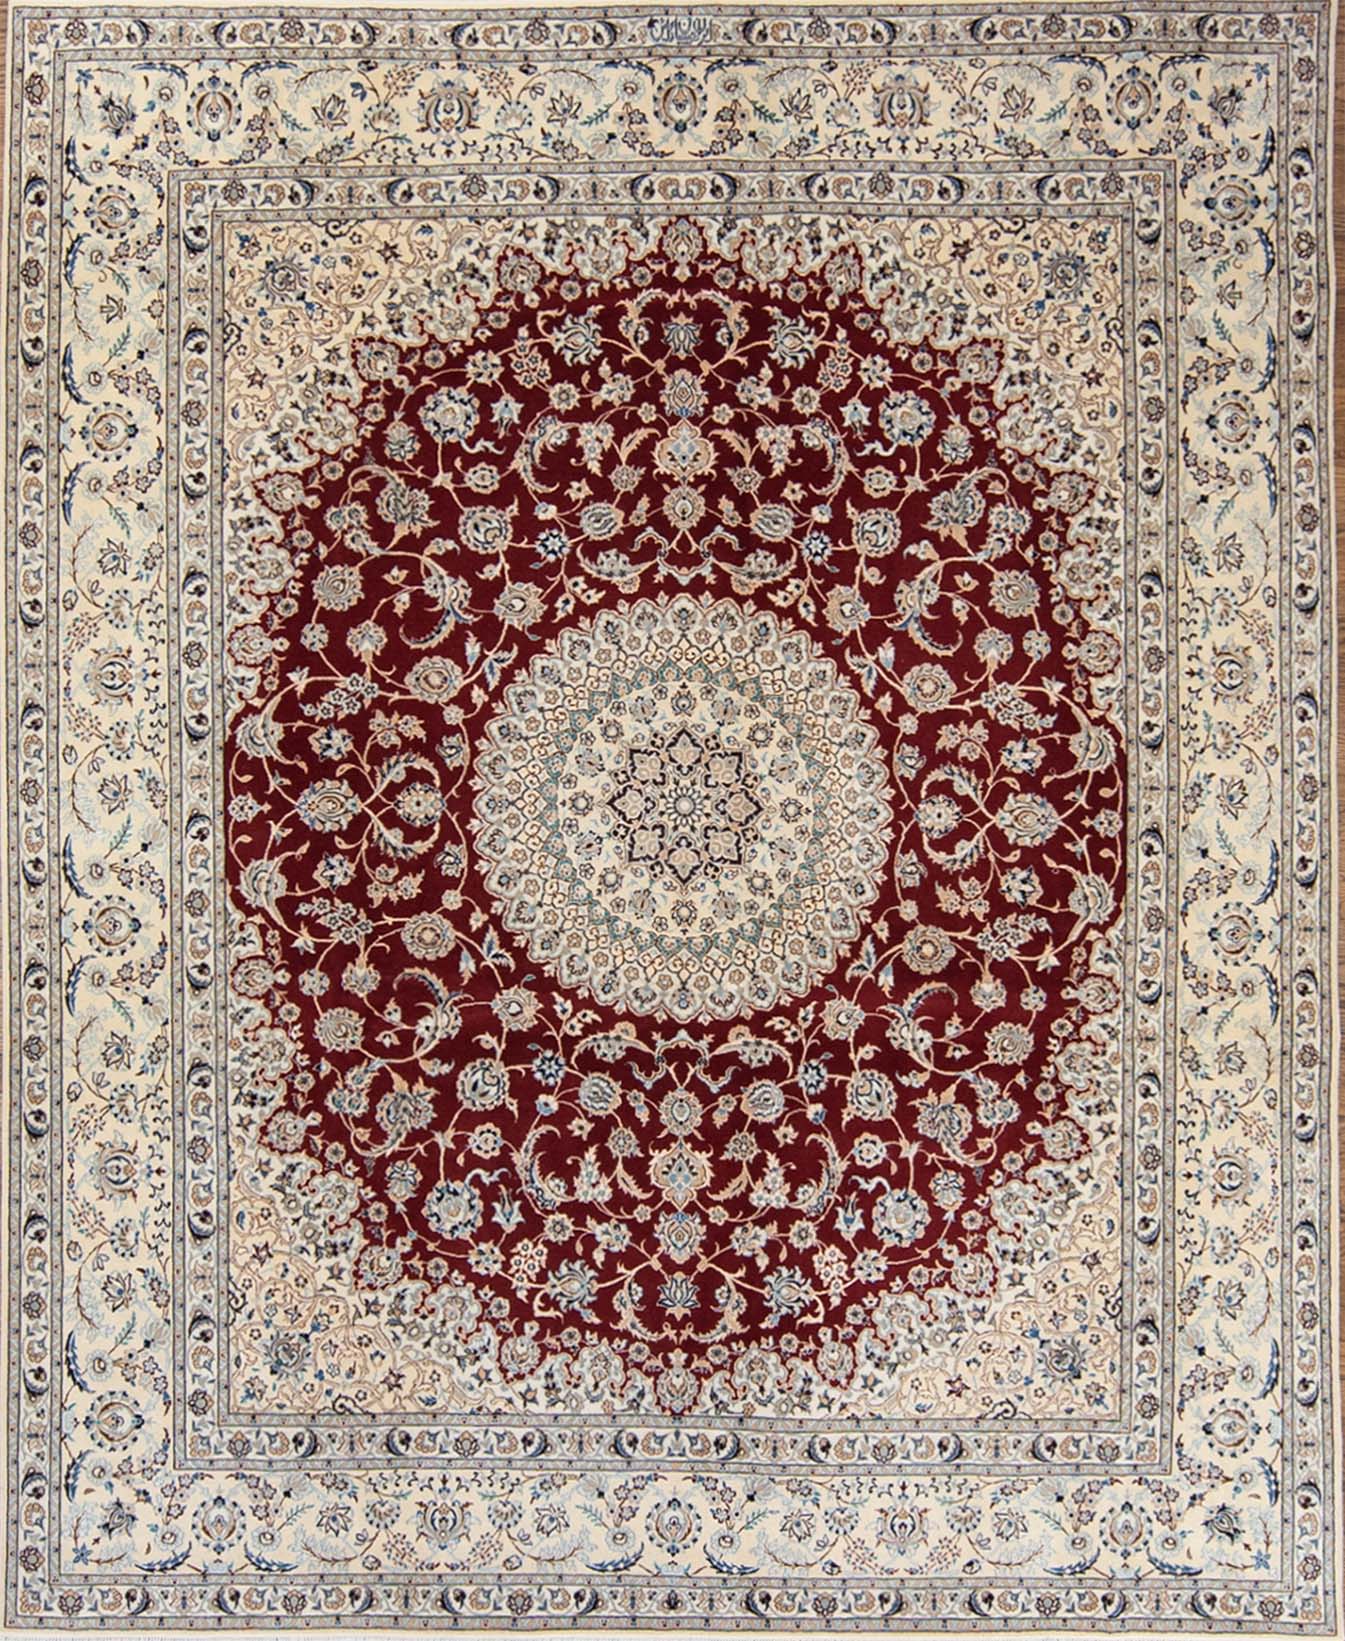 Red Persian rug. Handmade floral Persian Nain wool and silk rug. Size 6.9x8.2.